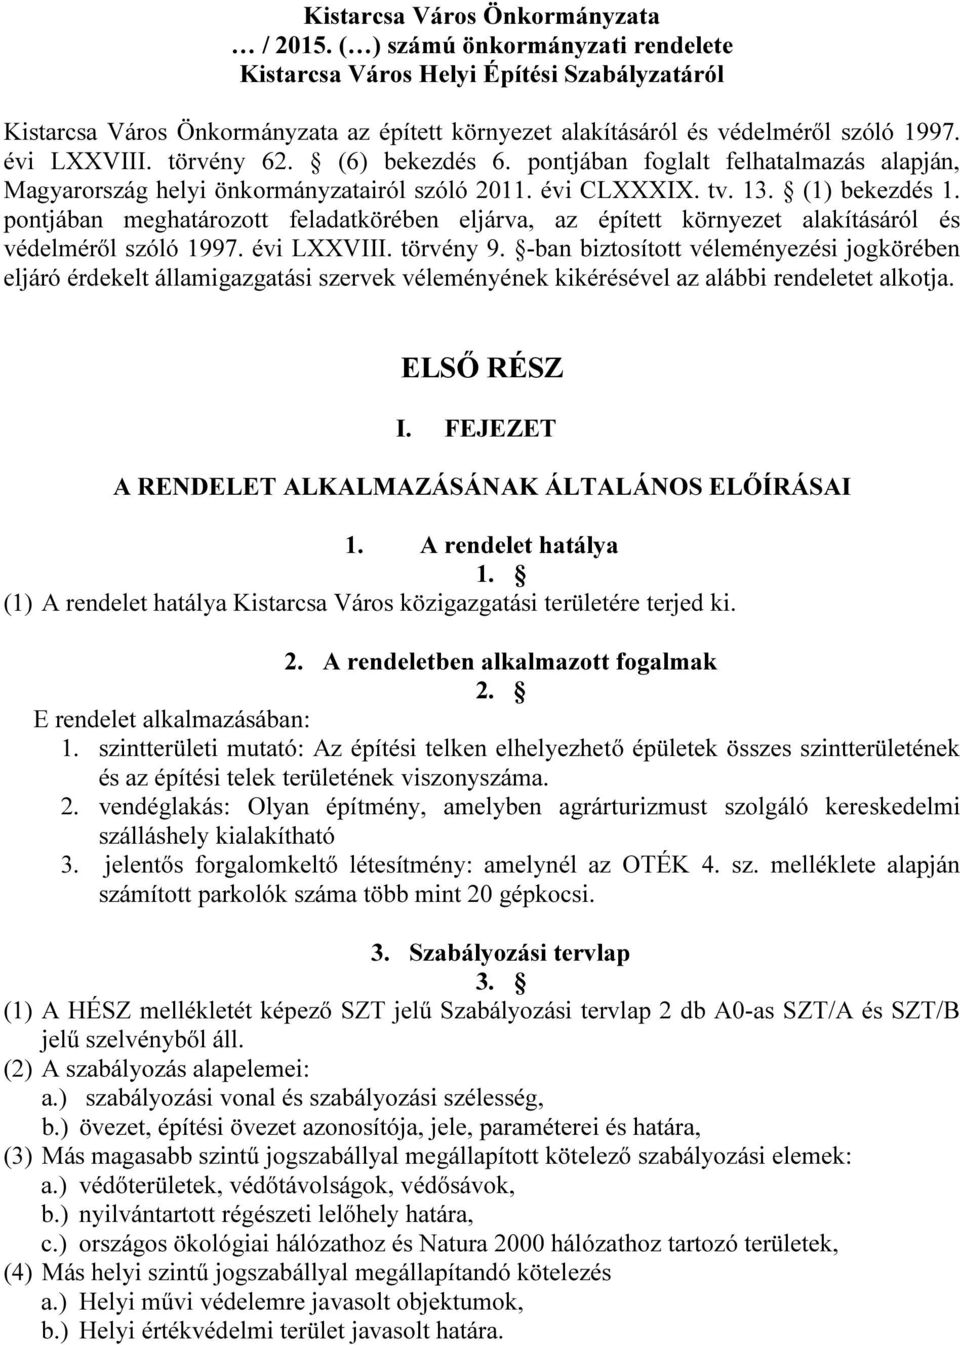 (6) bekezdés 6. pontjában foglalt felhatalmazás alapján, Magyarország helyi önkormányzatairól szóló 2011. évi CLXXXIX. tv. 13. (1) bekezdés 1.